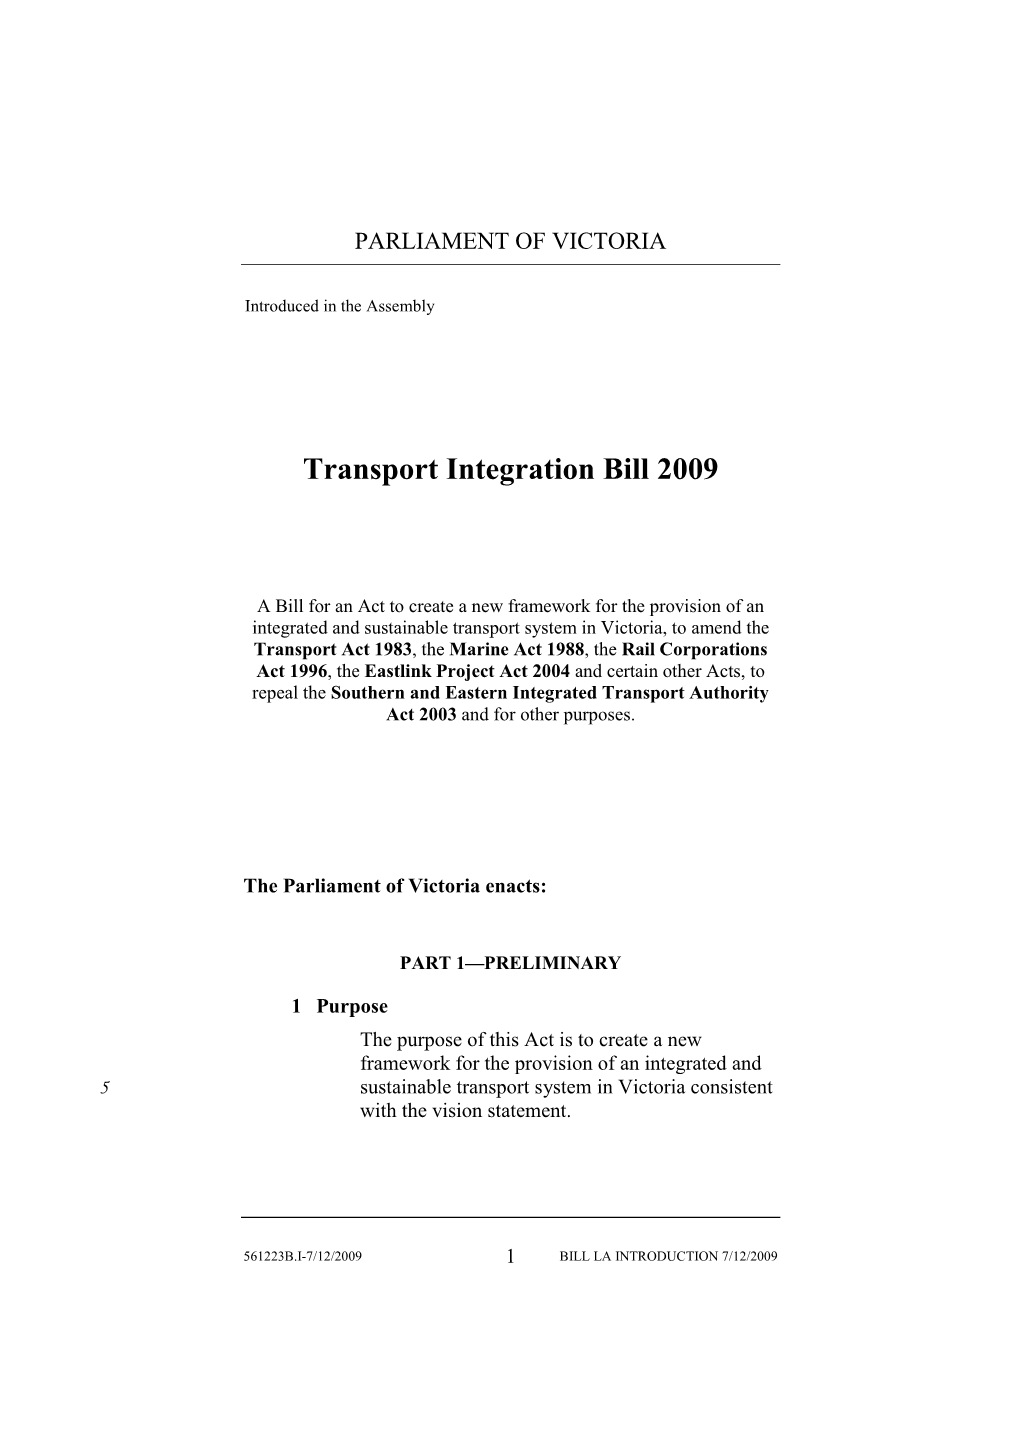 Transport Integration Bill 2009